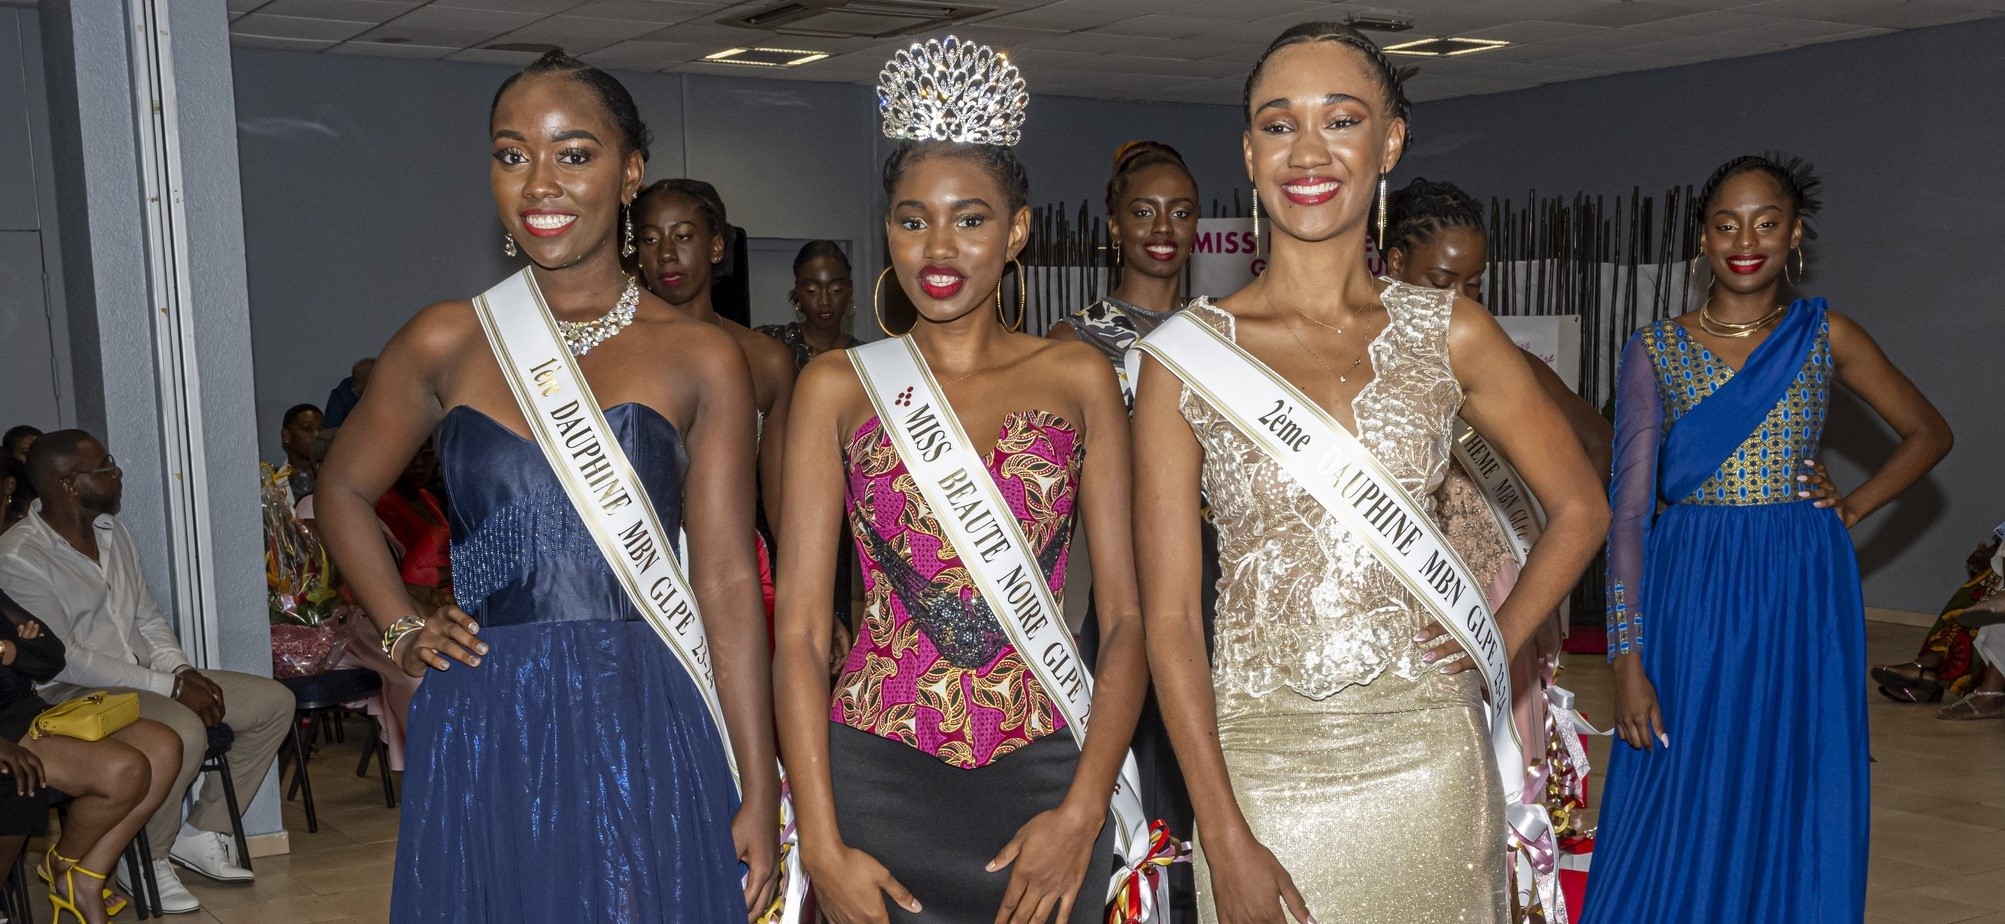     Miss Beauté Noire Guadeloupe : les candidatures sont ouvertes 

